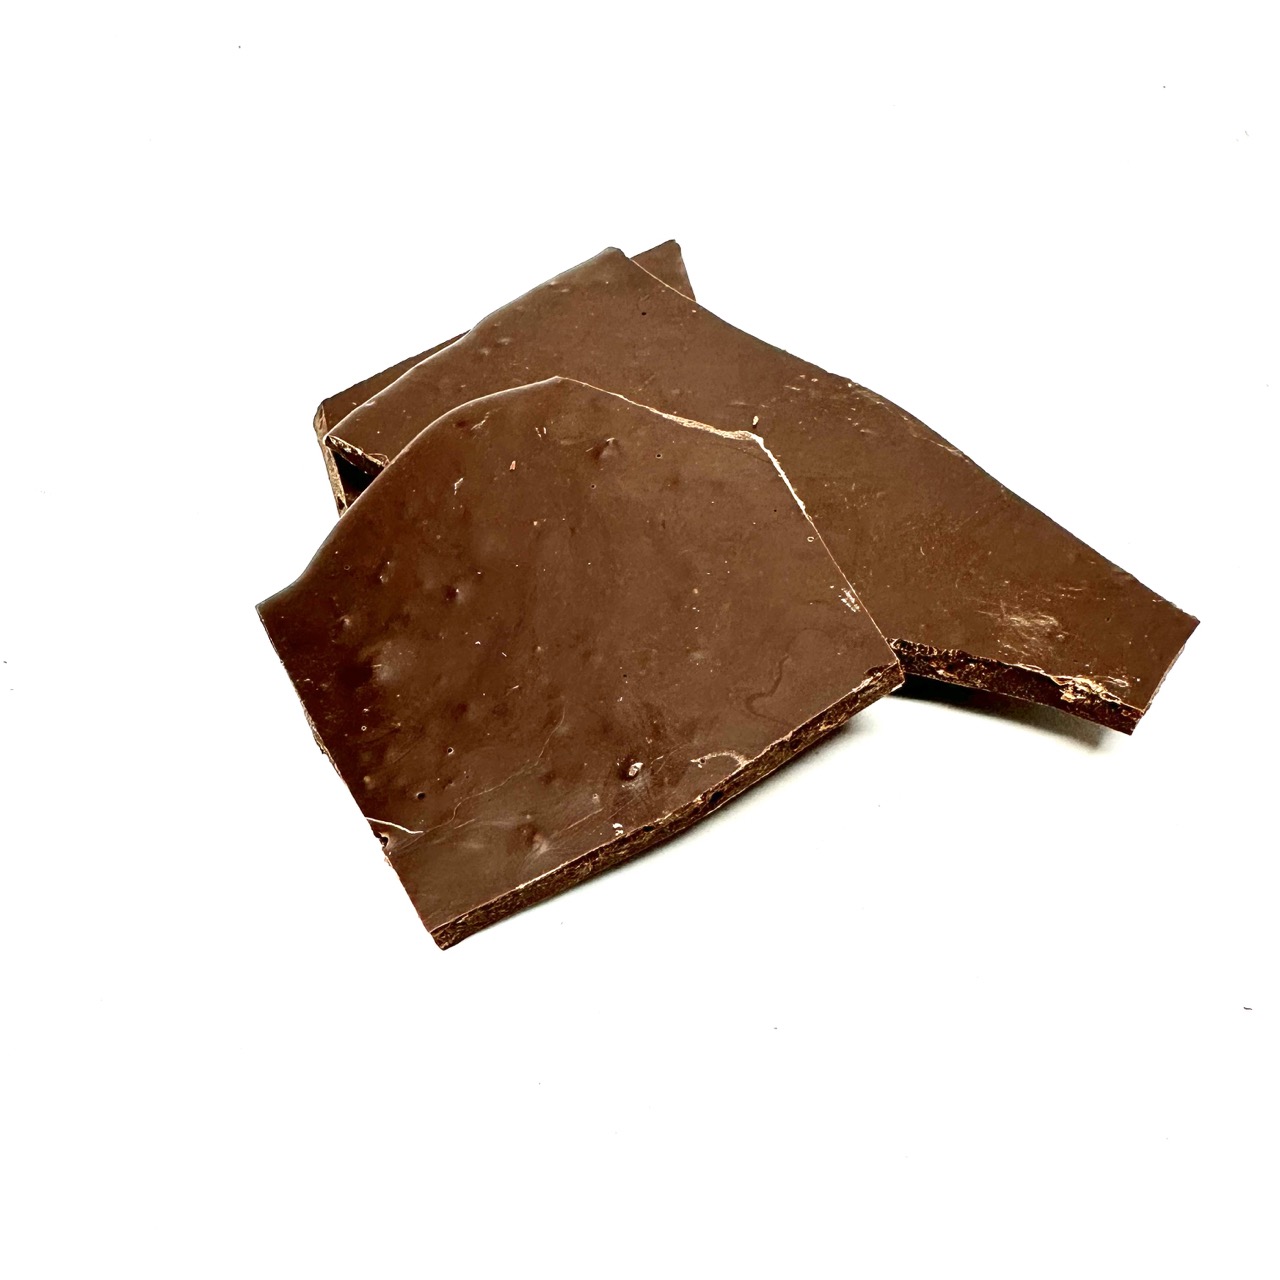 Mörk choklad, 63 procent kakaohalt, karamelliserat socker, kakaomassa och rostade, krossade kakaobönor.